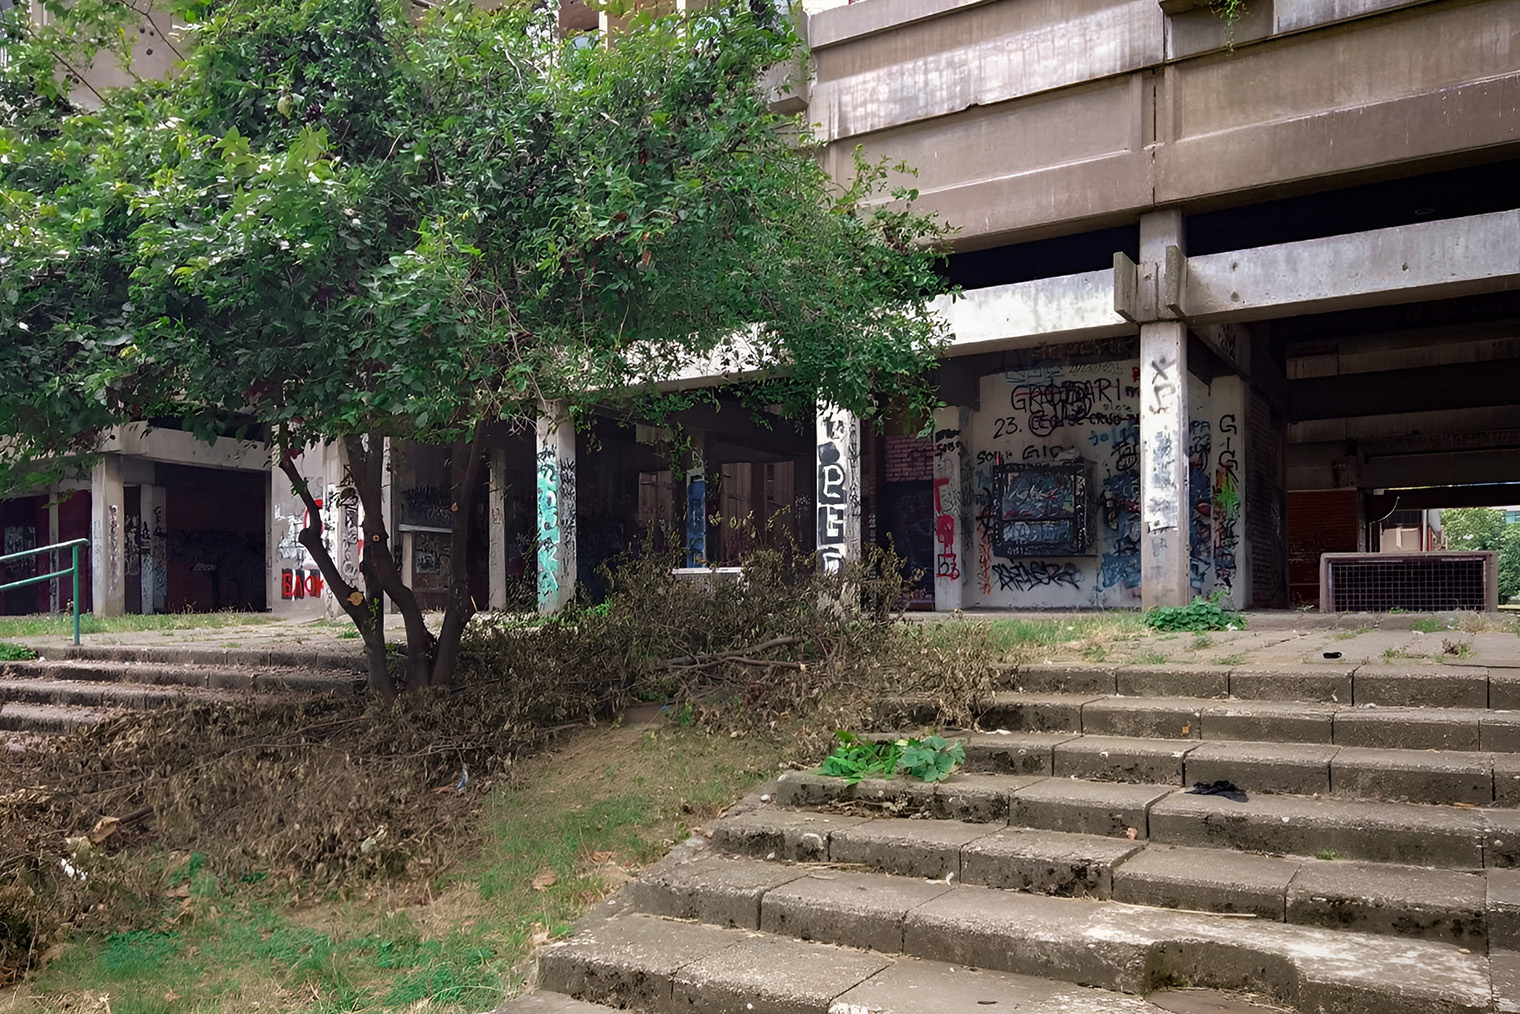 Половина зданий в Белграде изуродованы рисунками и надписями. Власти никак не борются с ними и оставляют в таком виде